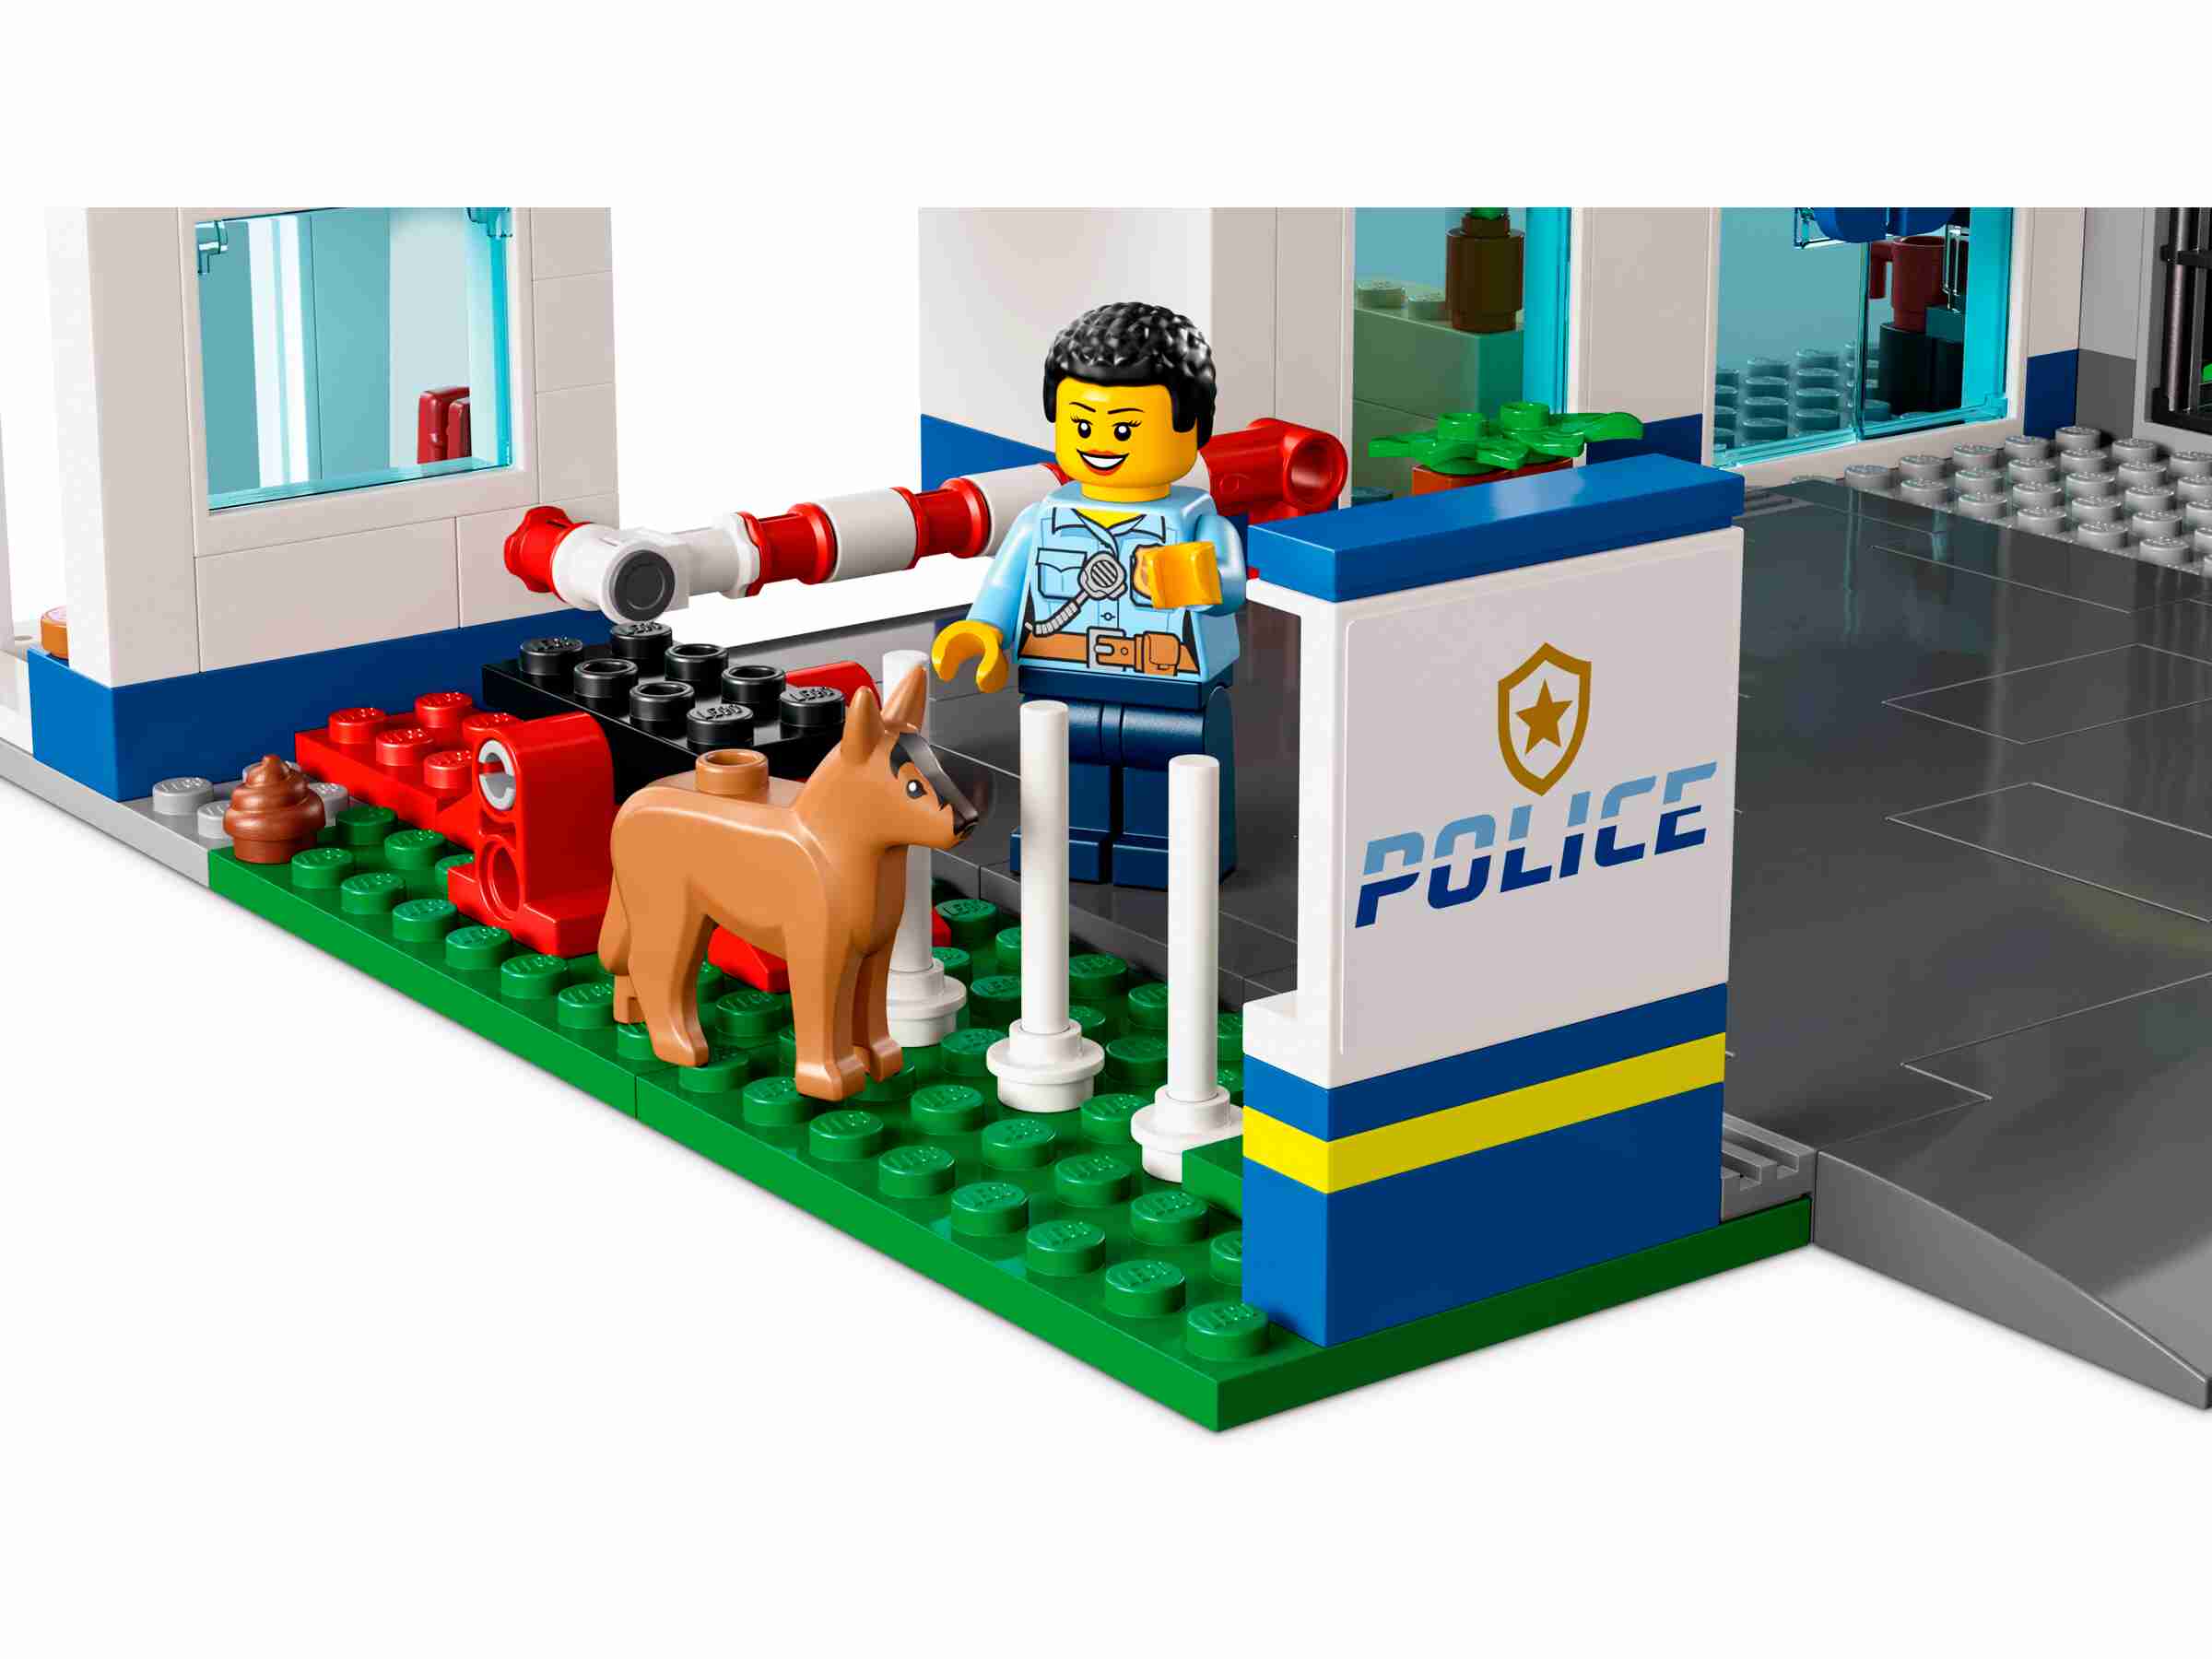 LEGO 60316 City - Polizeistation, 5 Minifiguren, Hubschrauber, Müllauto